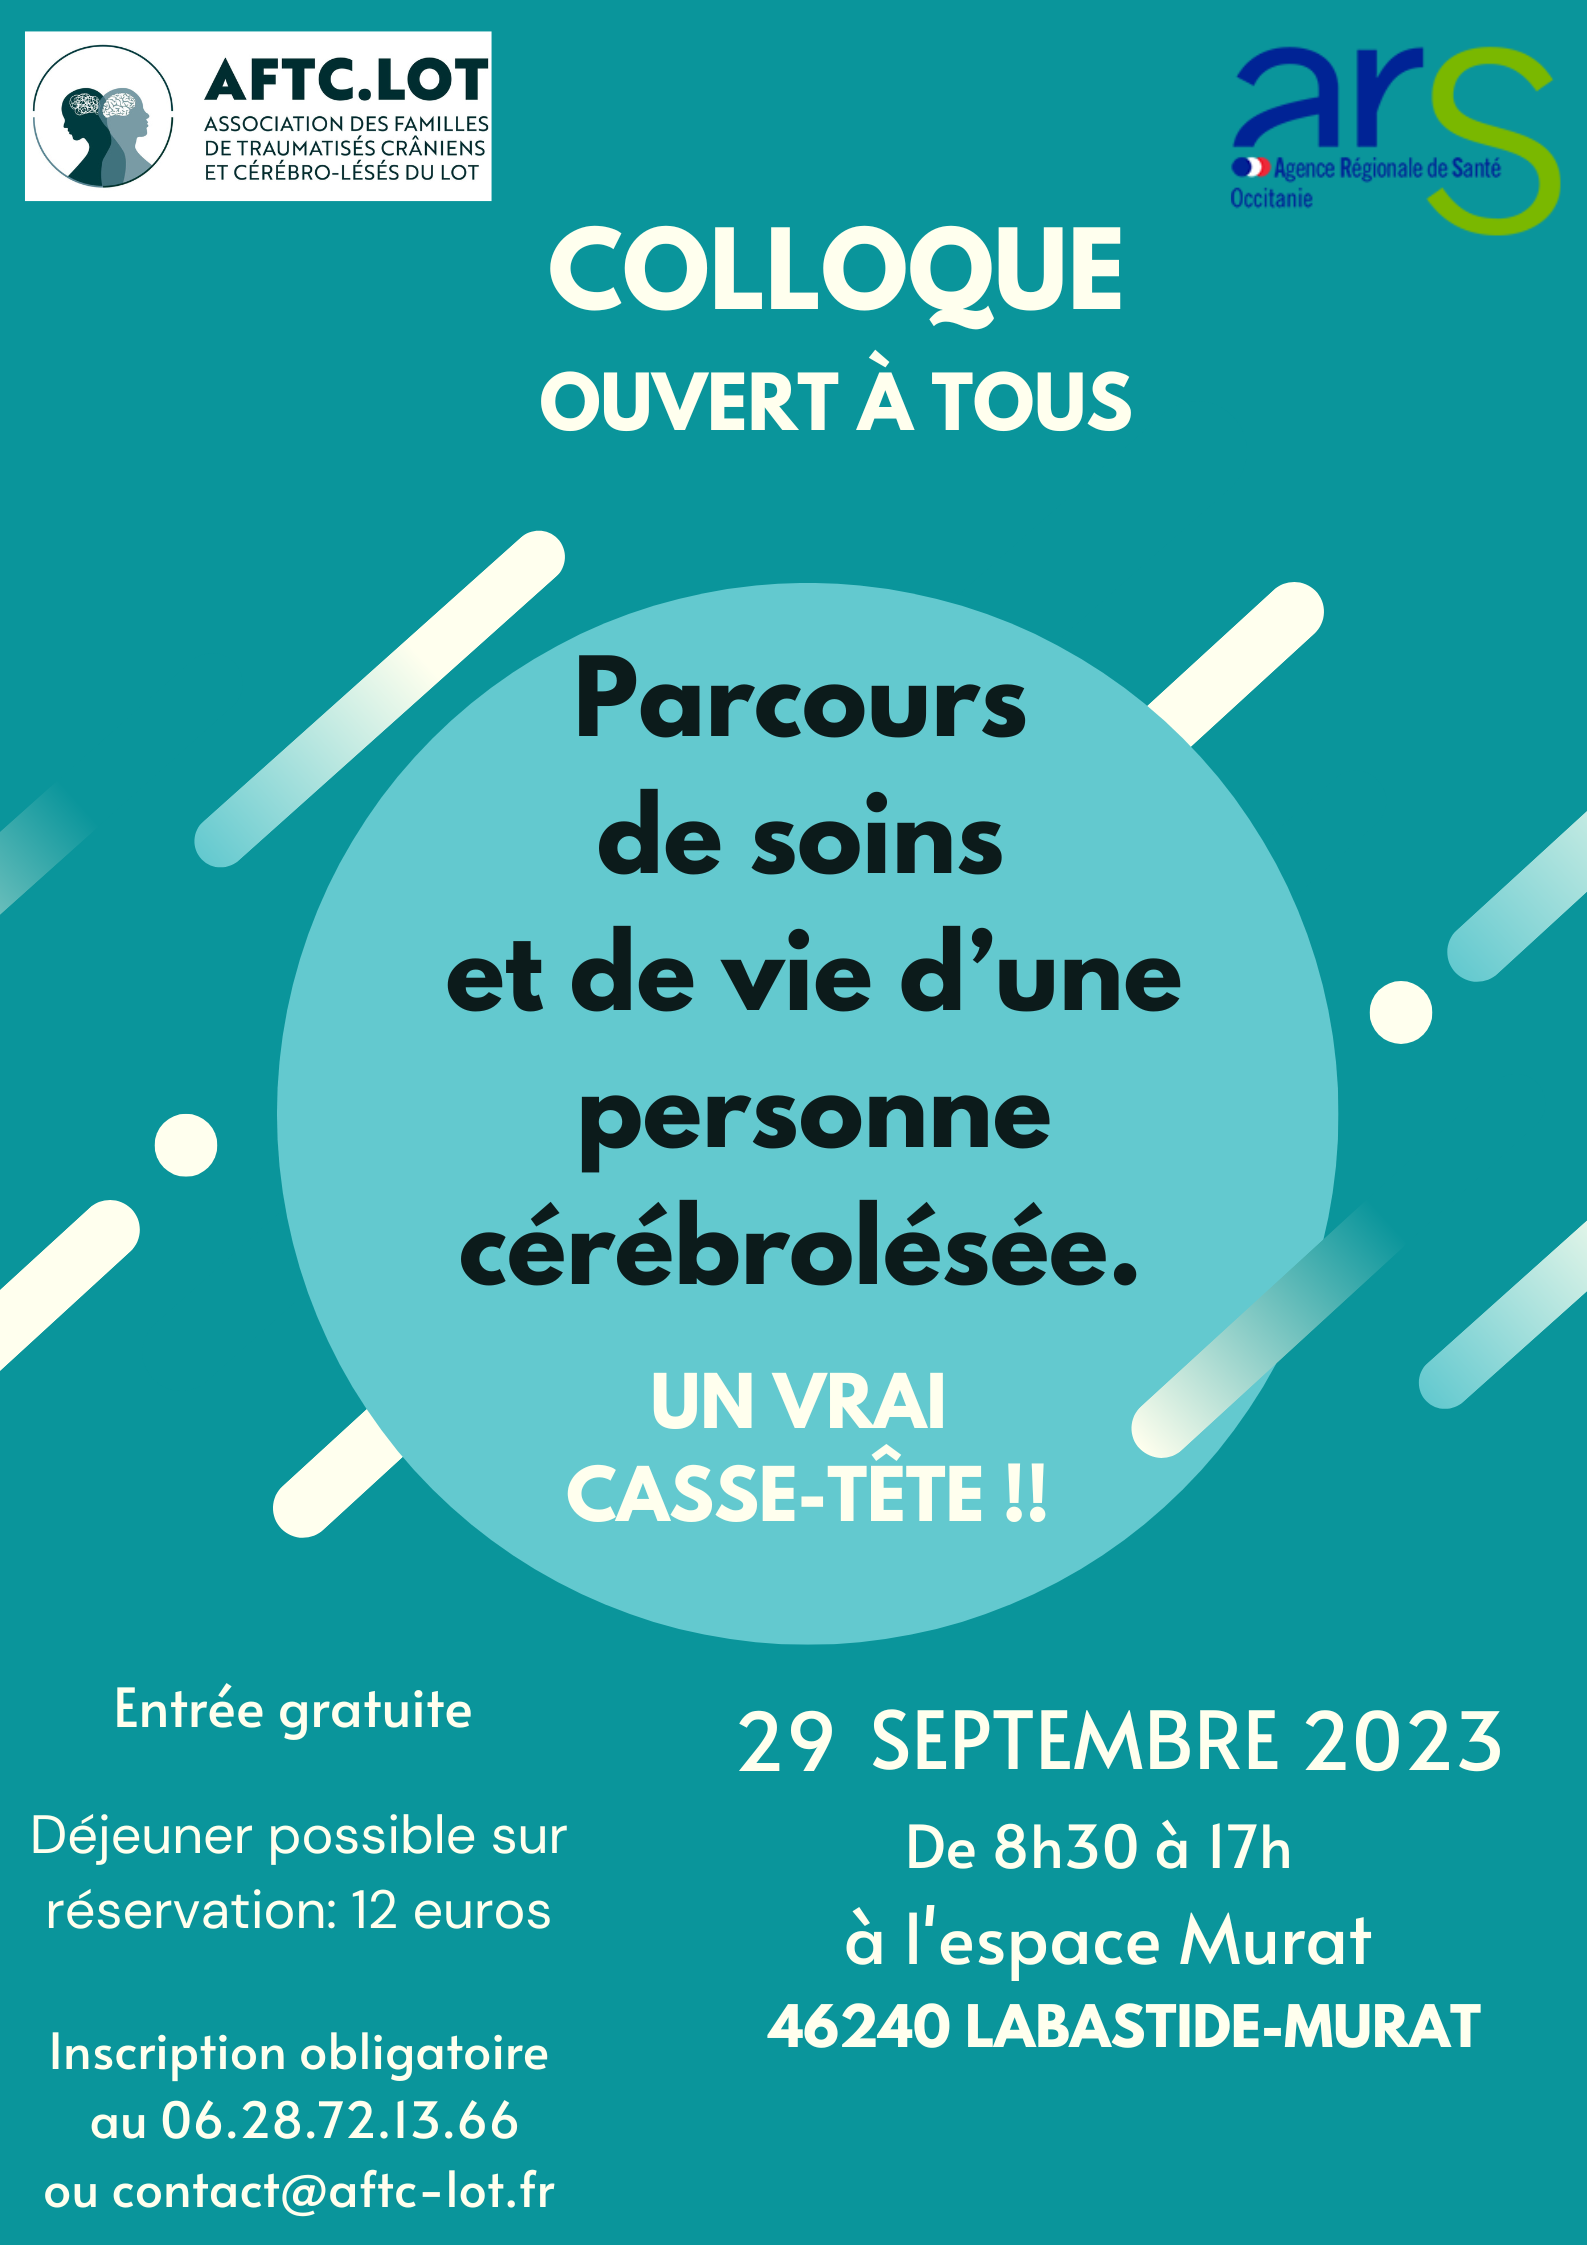 Colloque « Prendre en charge les cérébro-lésés » Vendredi 29 septembre à Labastide-Murat